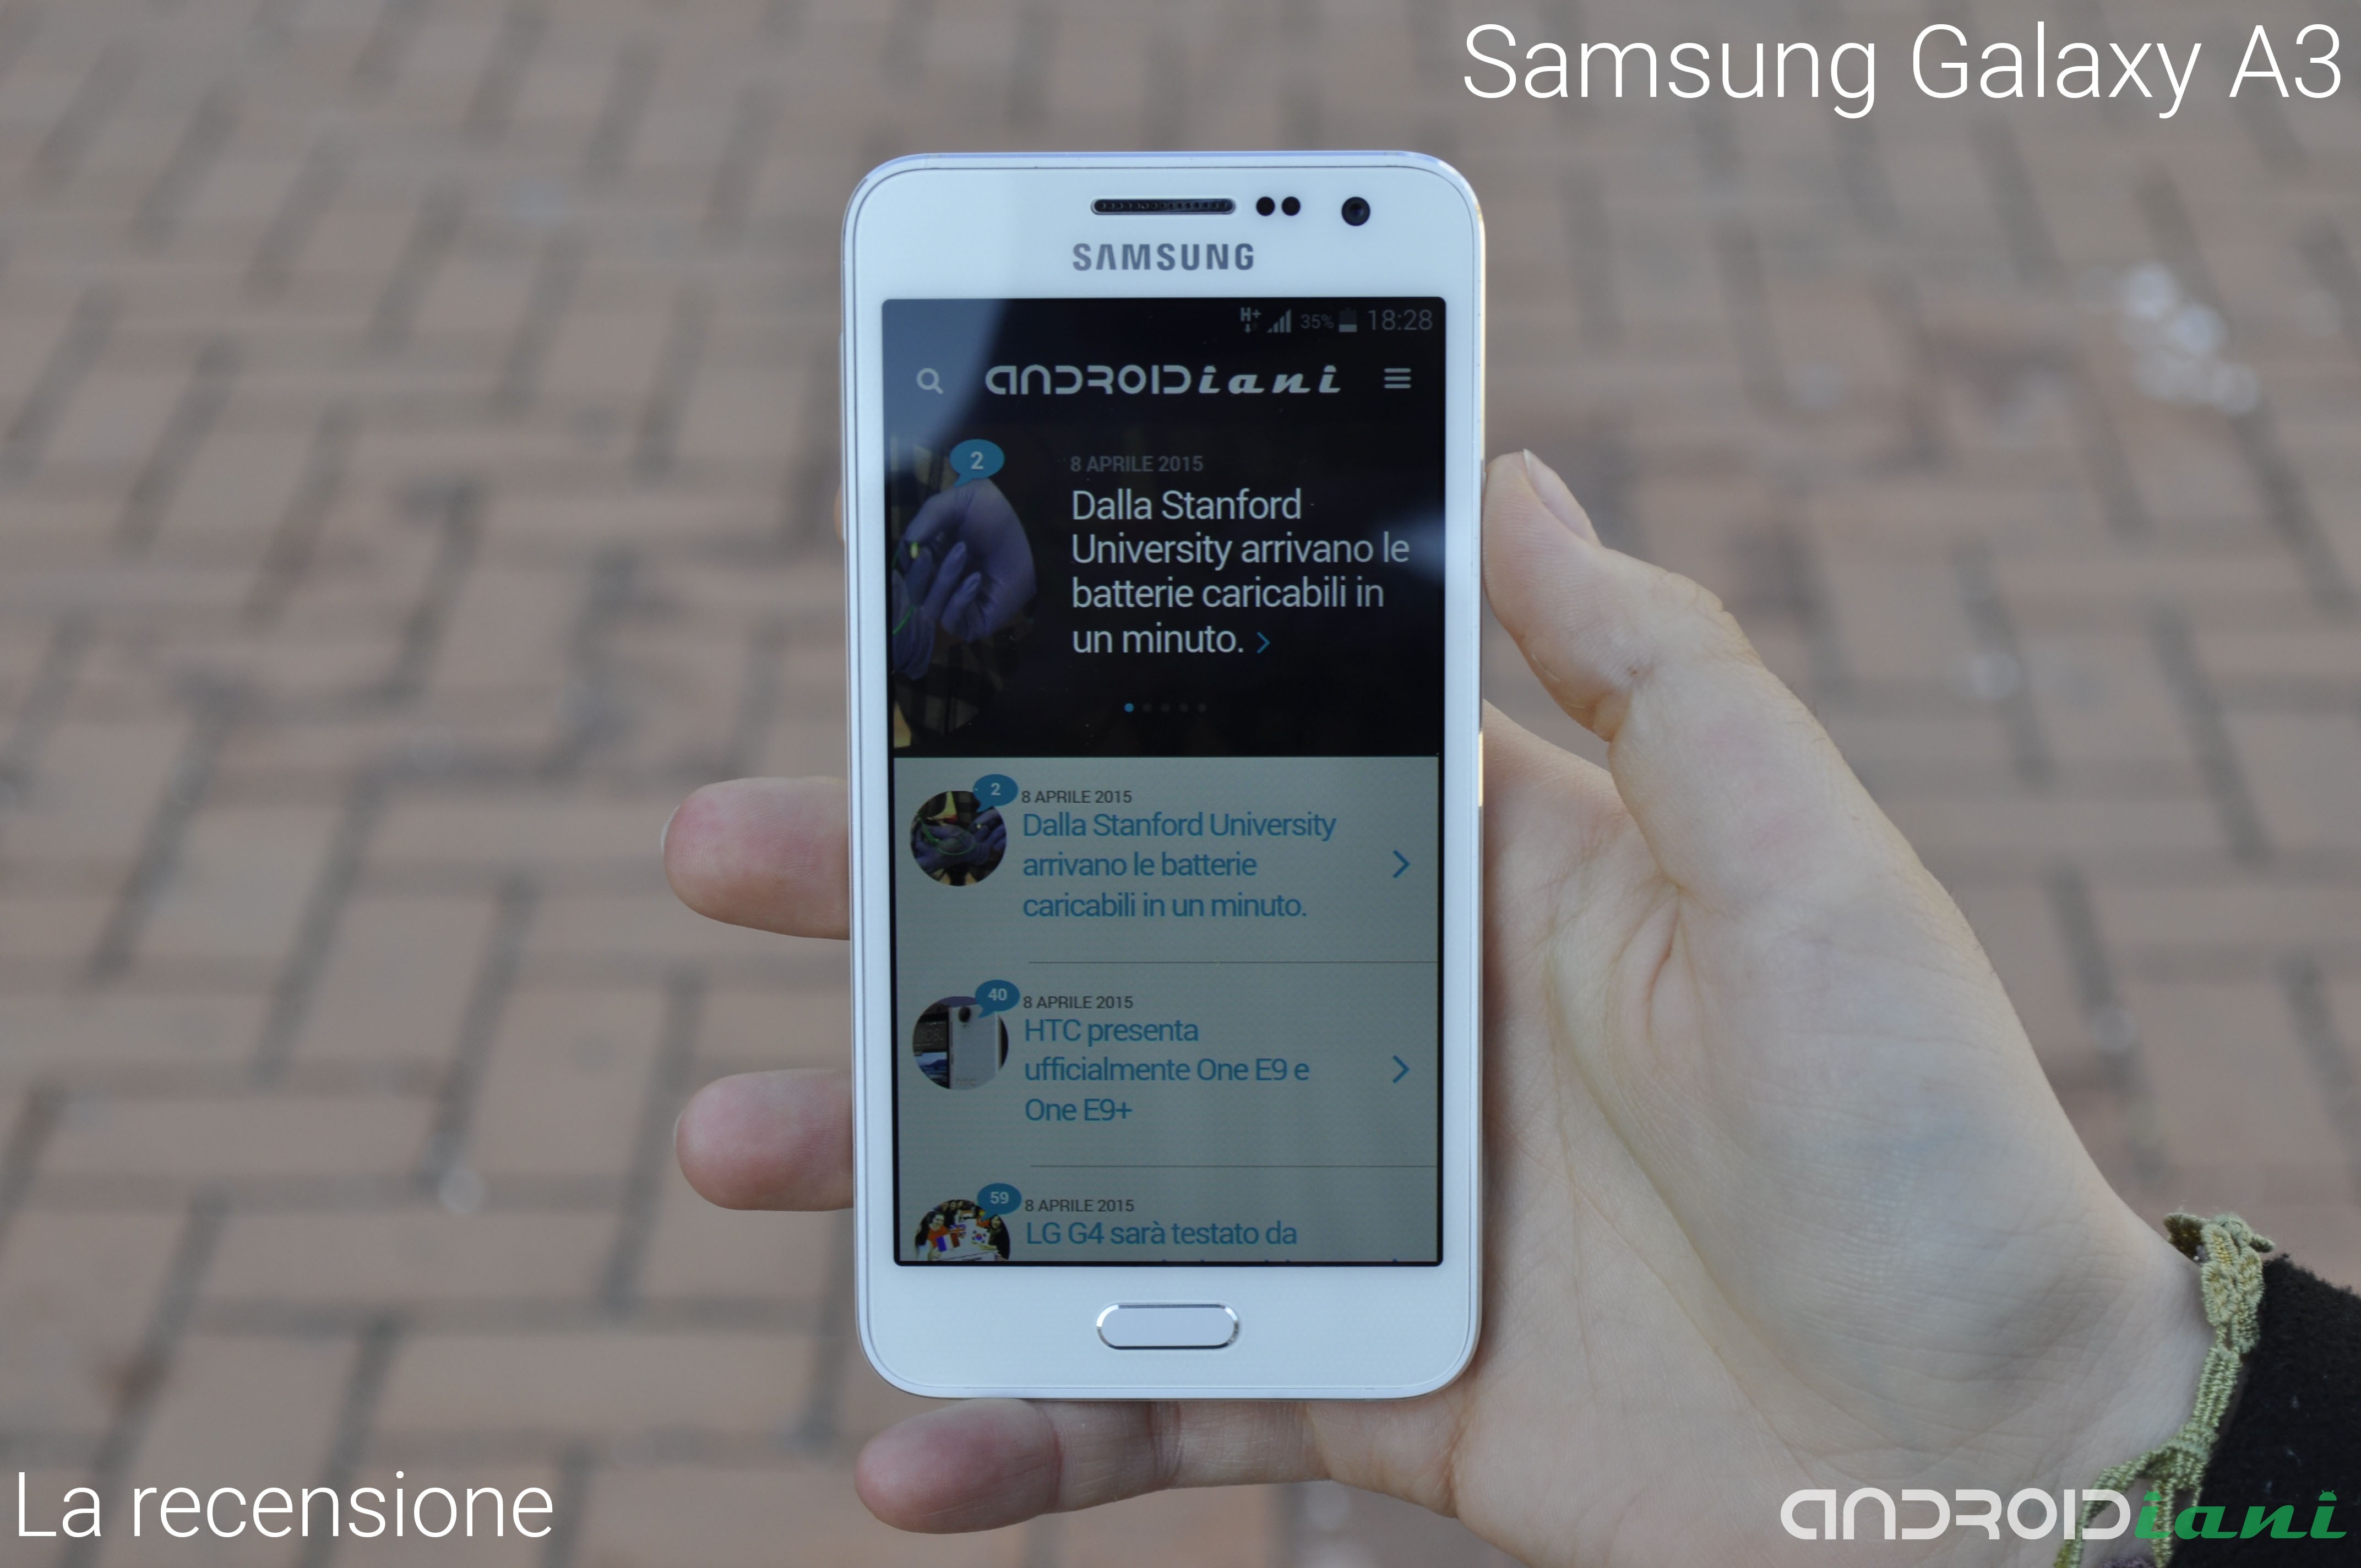 Samsung Galaxy A3: La recensione di Androidiani.com